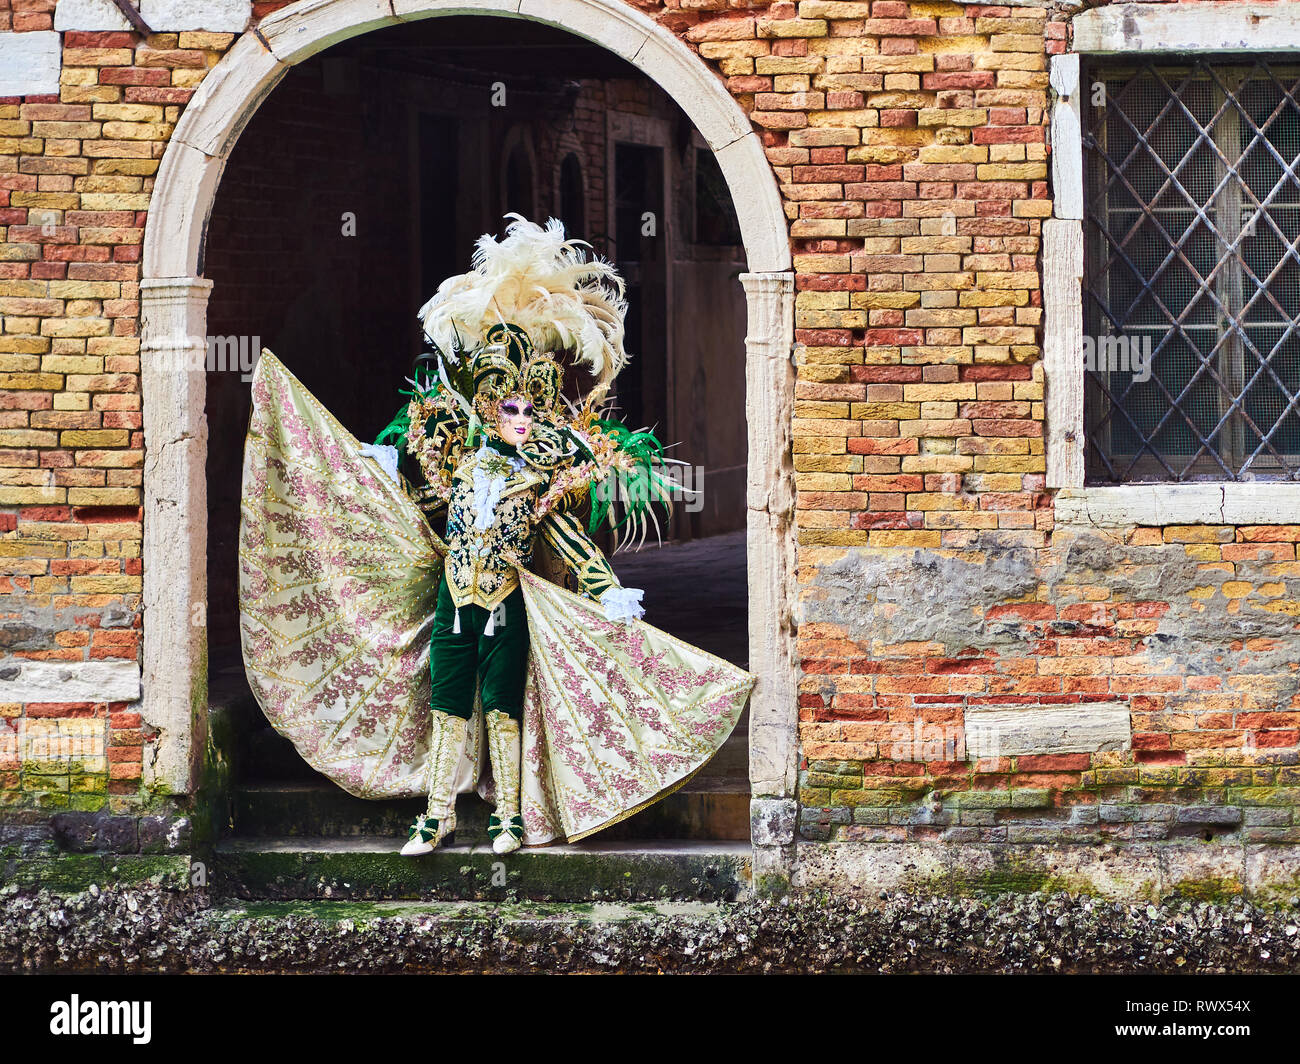 Venedig, Italien - 2. März 2019 Person gekleidet in typisch venezianischem Kostüm Modelle unter einem Bogen in Richtung Wasser Kanal in Venedig im Karneval o Stockfoto